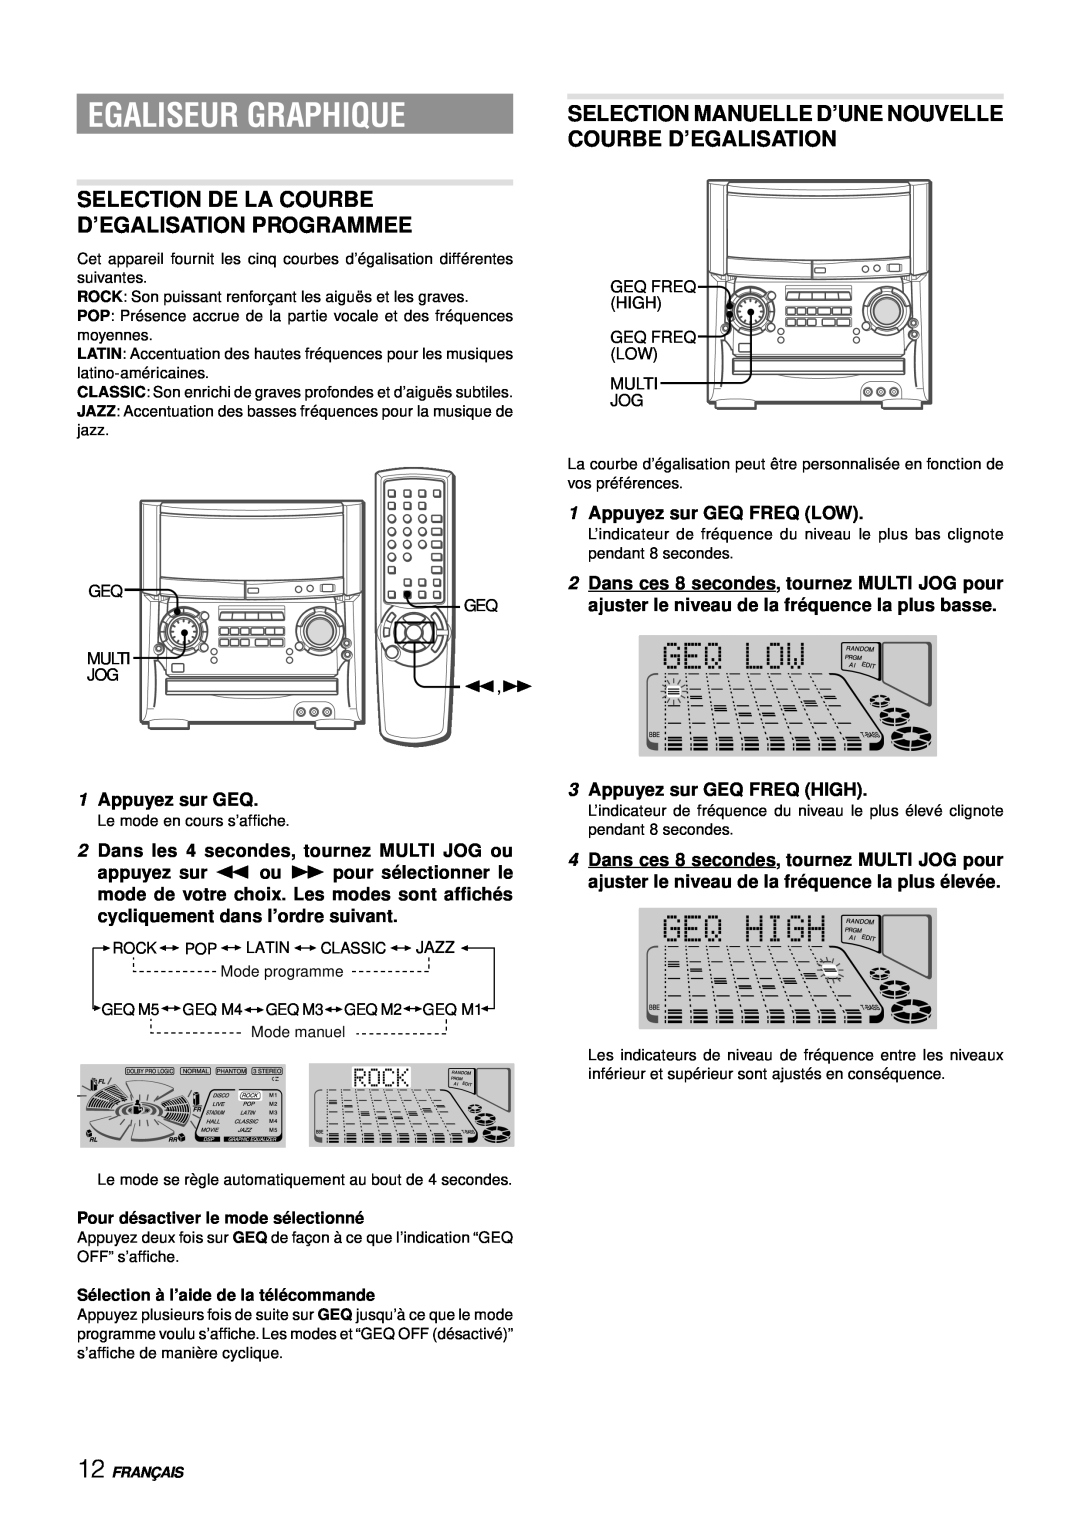 Aiwa XH-A1000 manual Egaliseur Graphique, Selection De La Courbe D’Egalisation Programmee, 1Appuyez sur GEQ, Franç Ais 